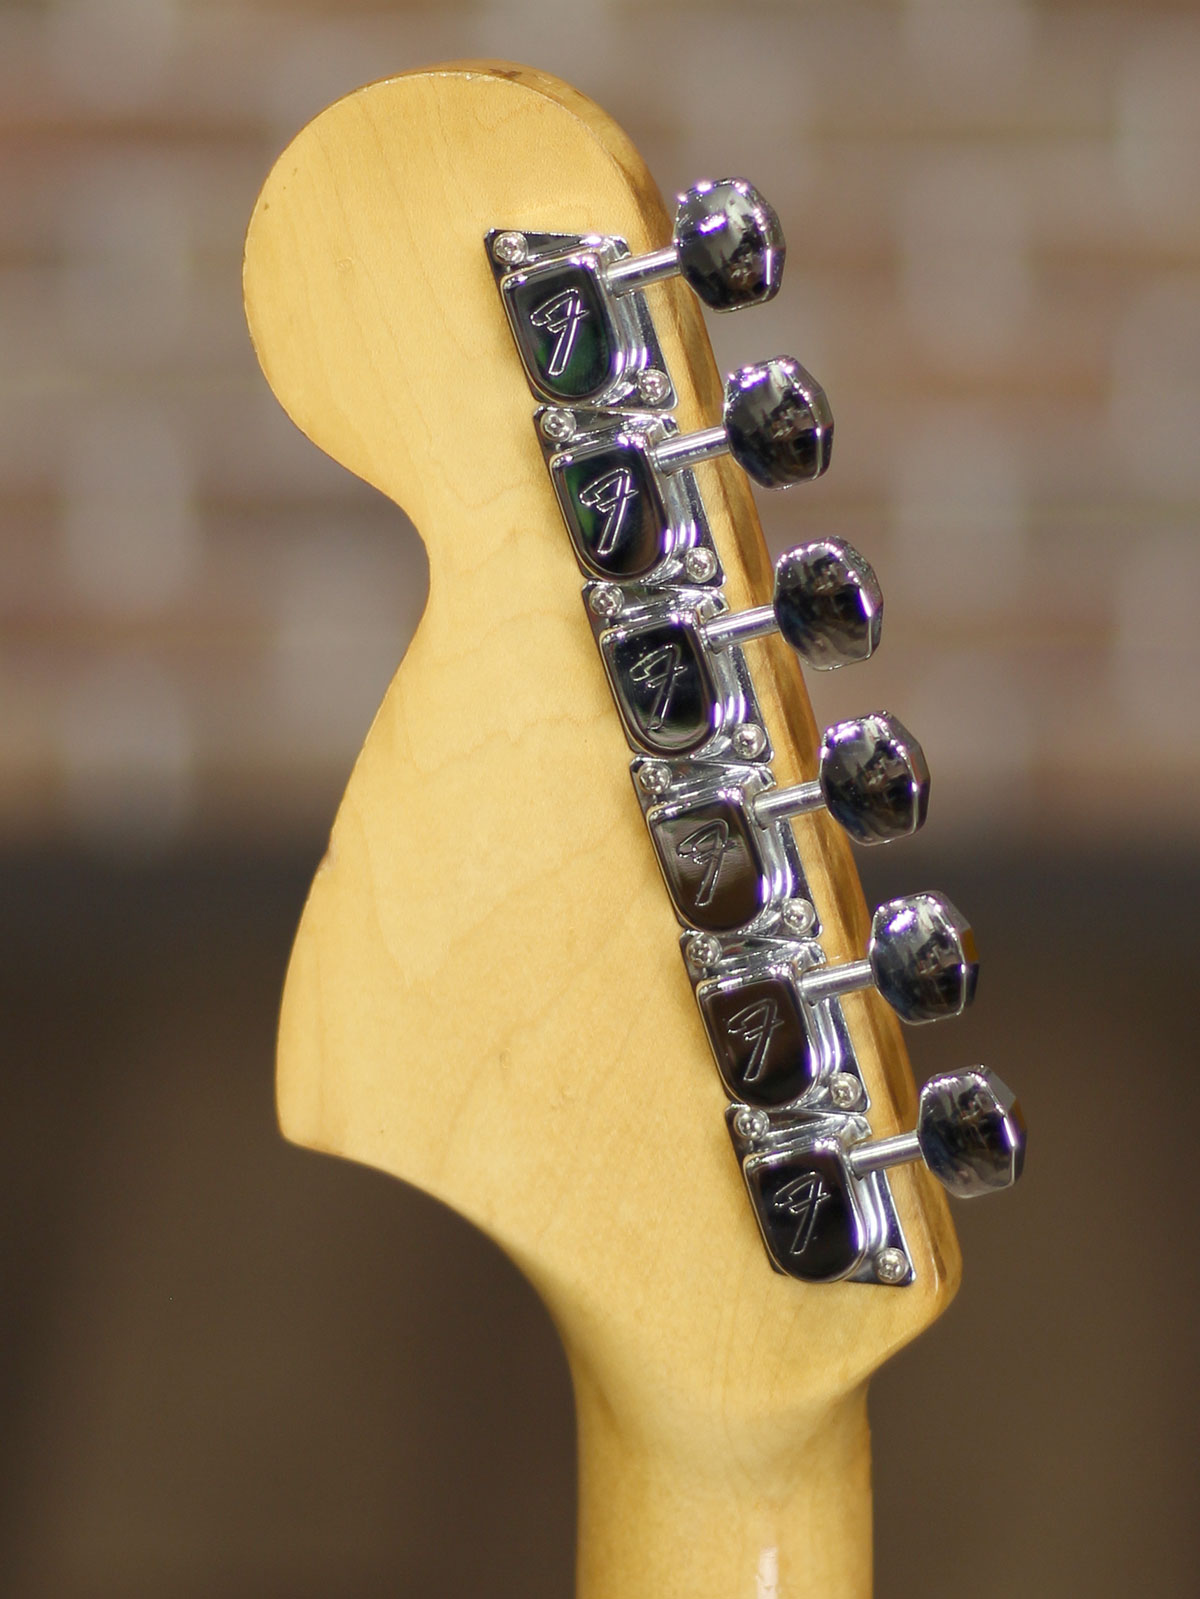 Fender 1974 Stratocaster Hardtail Sunburst - 20.jpg